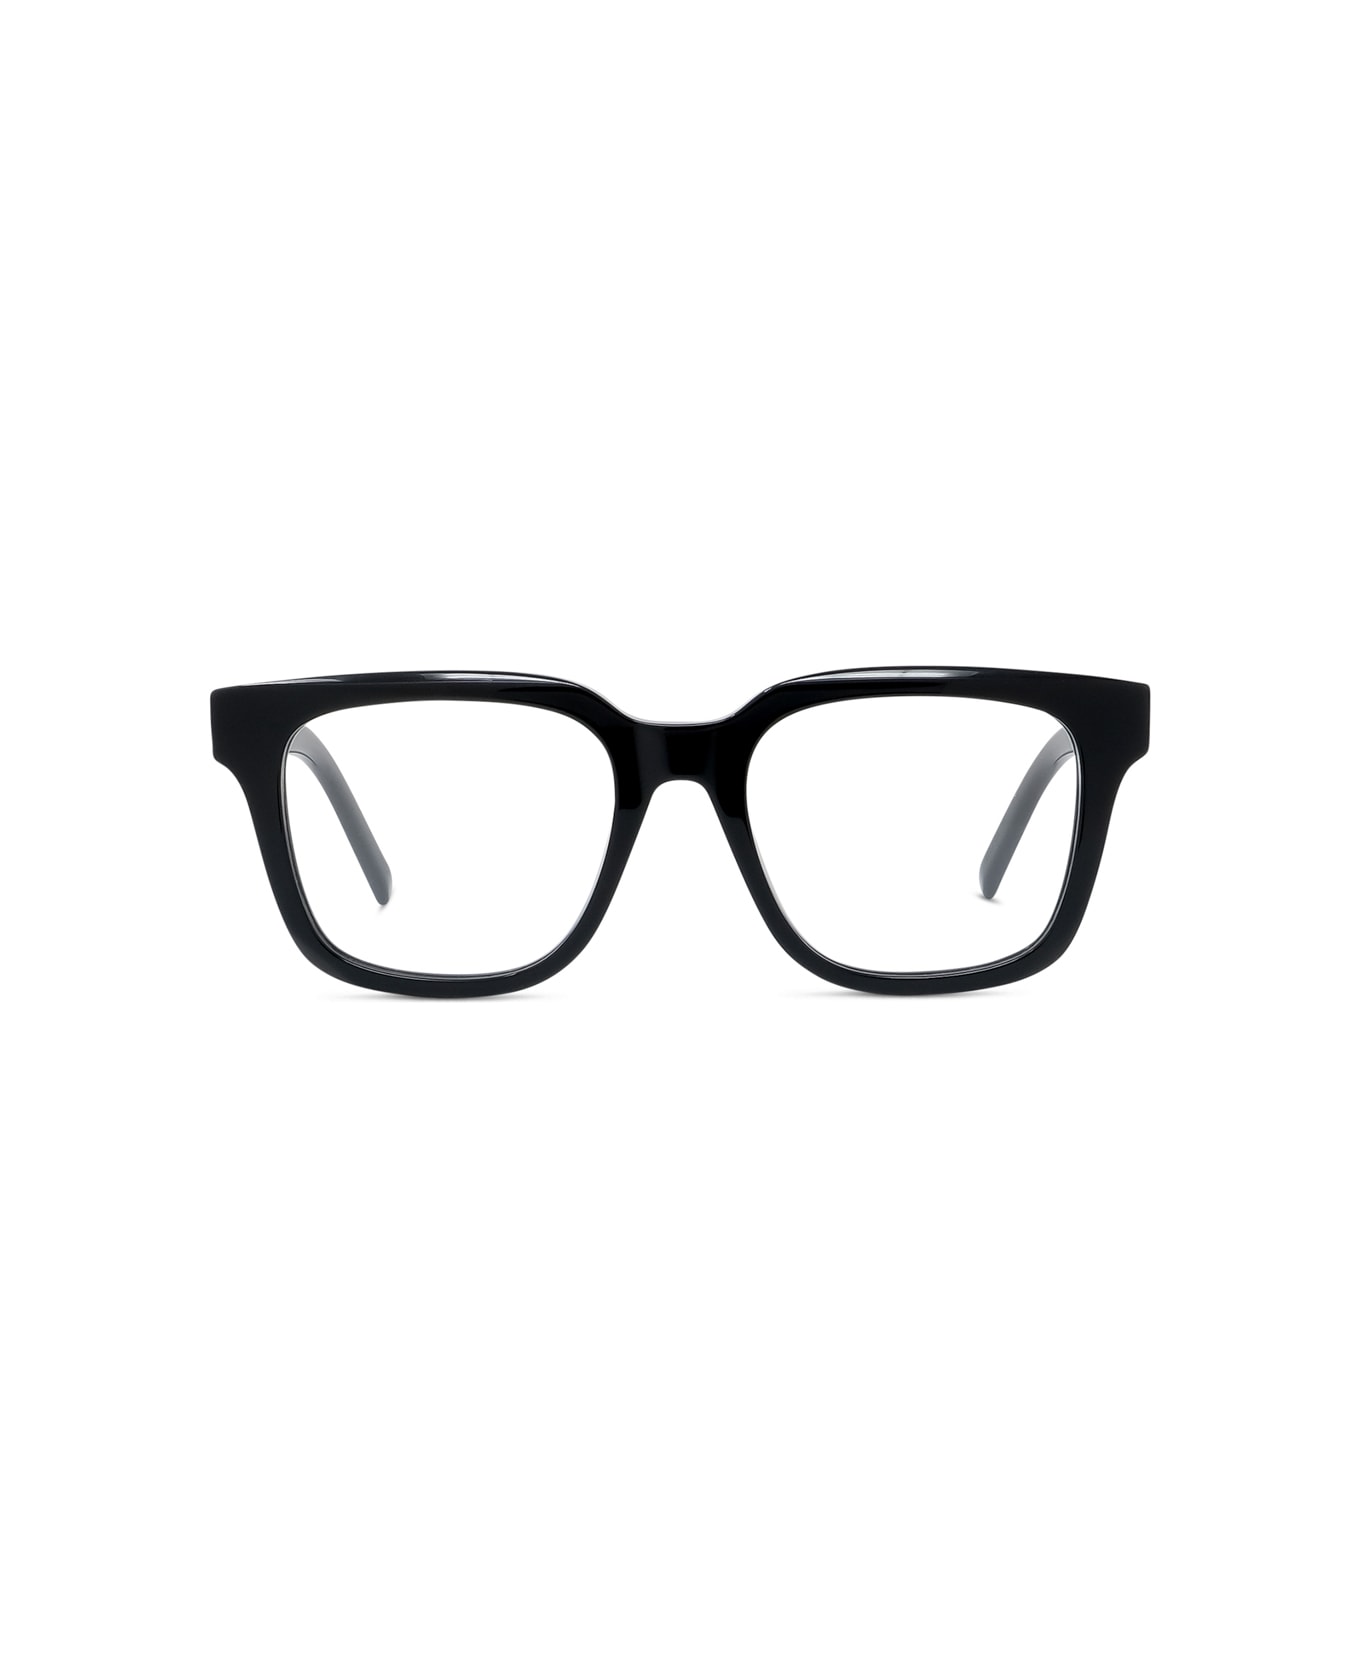 Givenchy Eyewear Gv50005i 001 Glasses - Nero